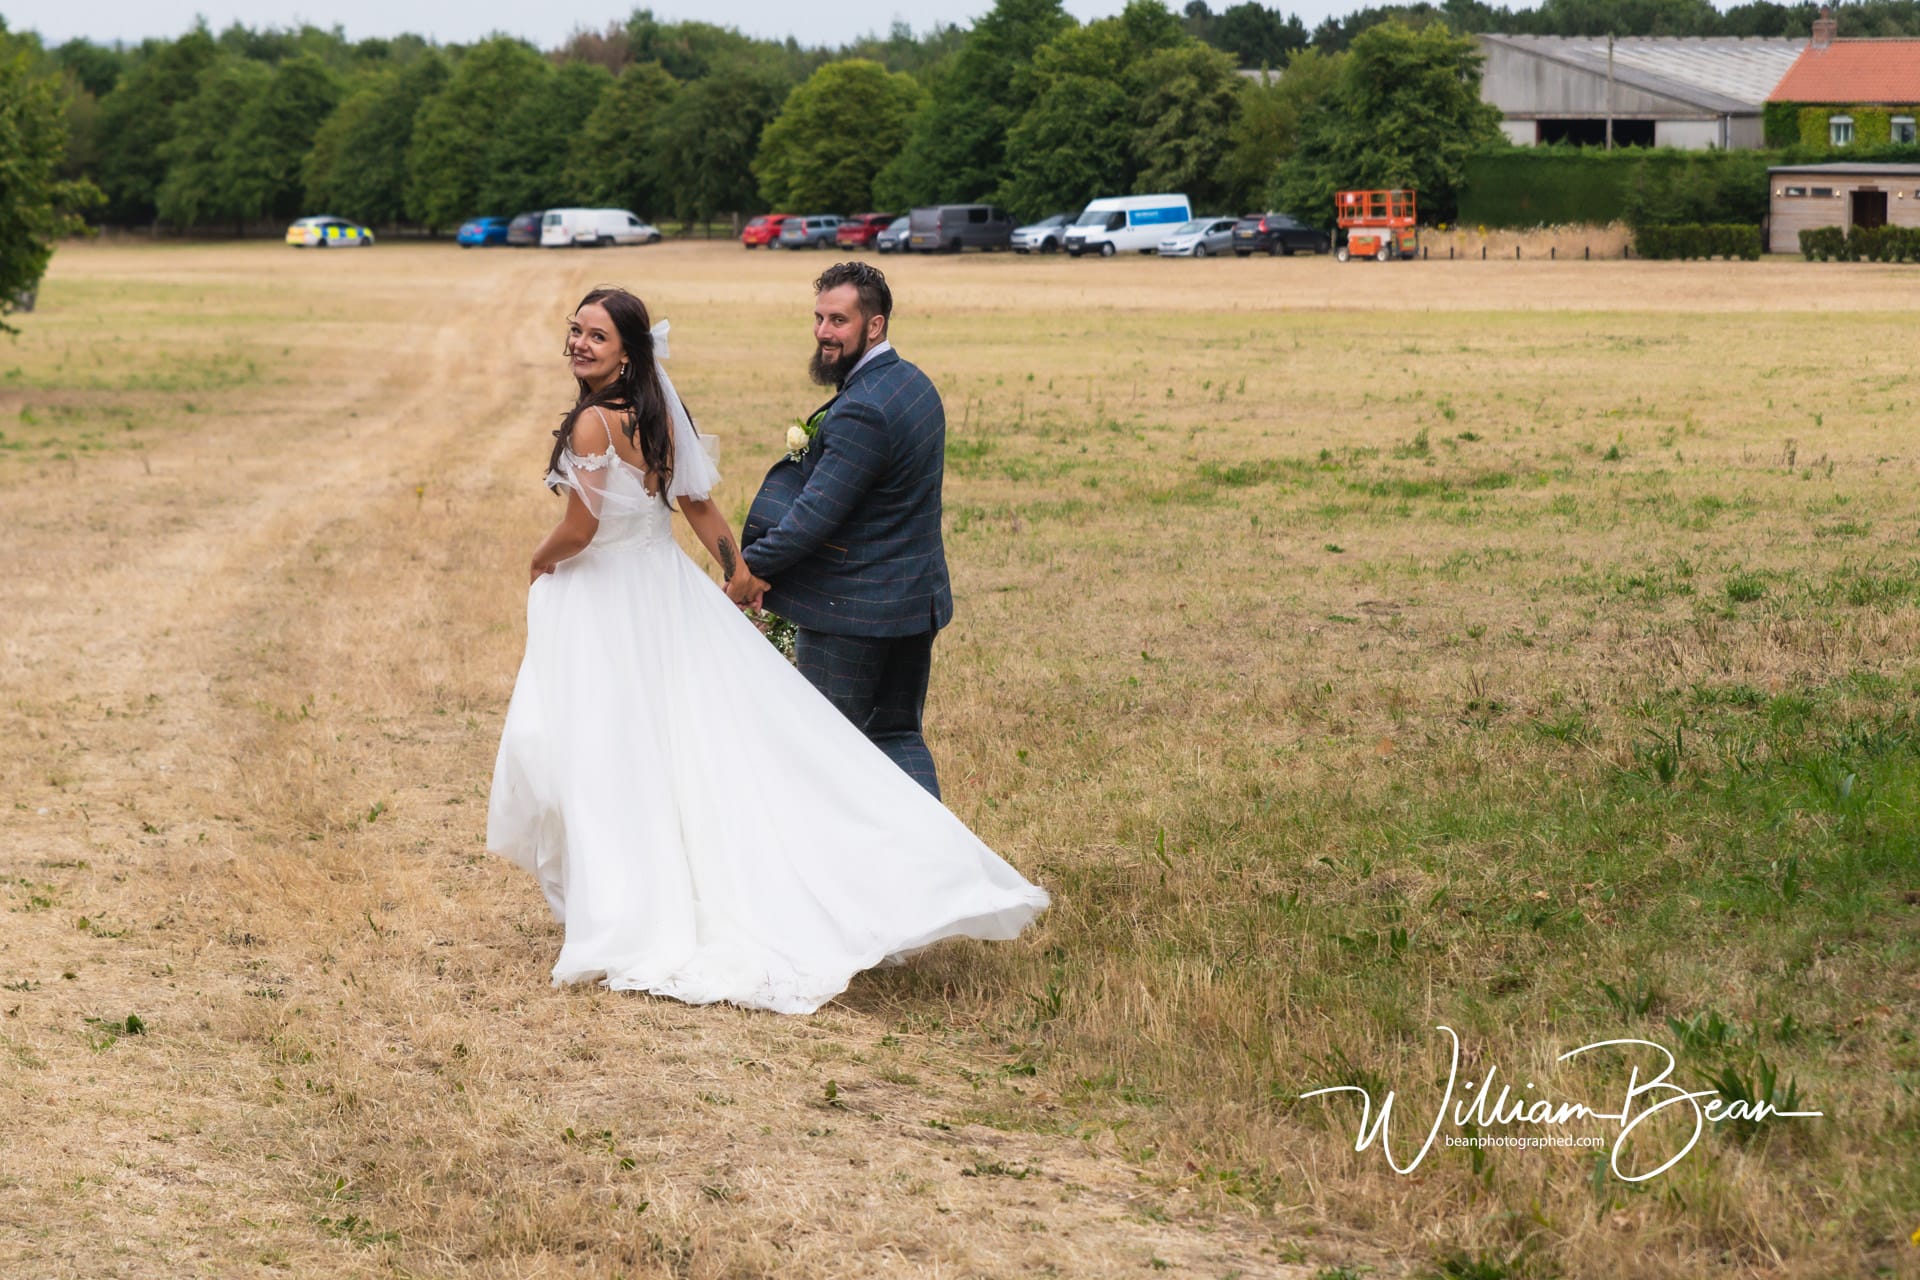 077-wedding-photography-westfield-farm-sherburn-malton-north-yorkshire